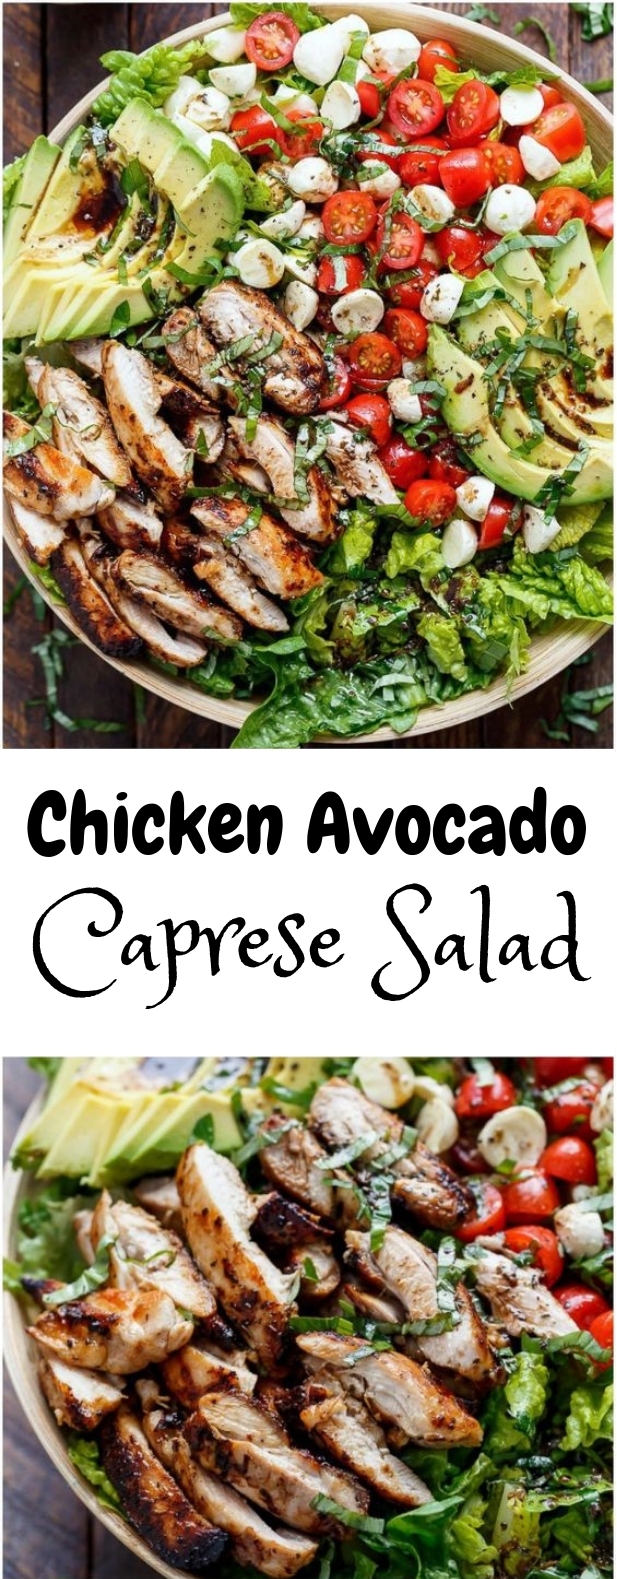 chicken avocado caprese salad #salad #vegetarian